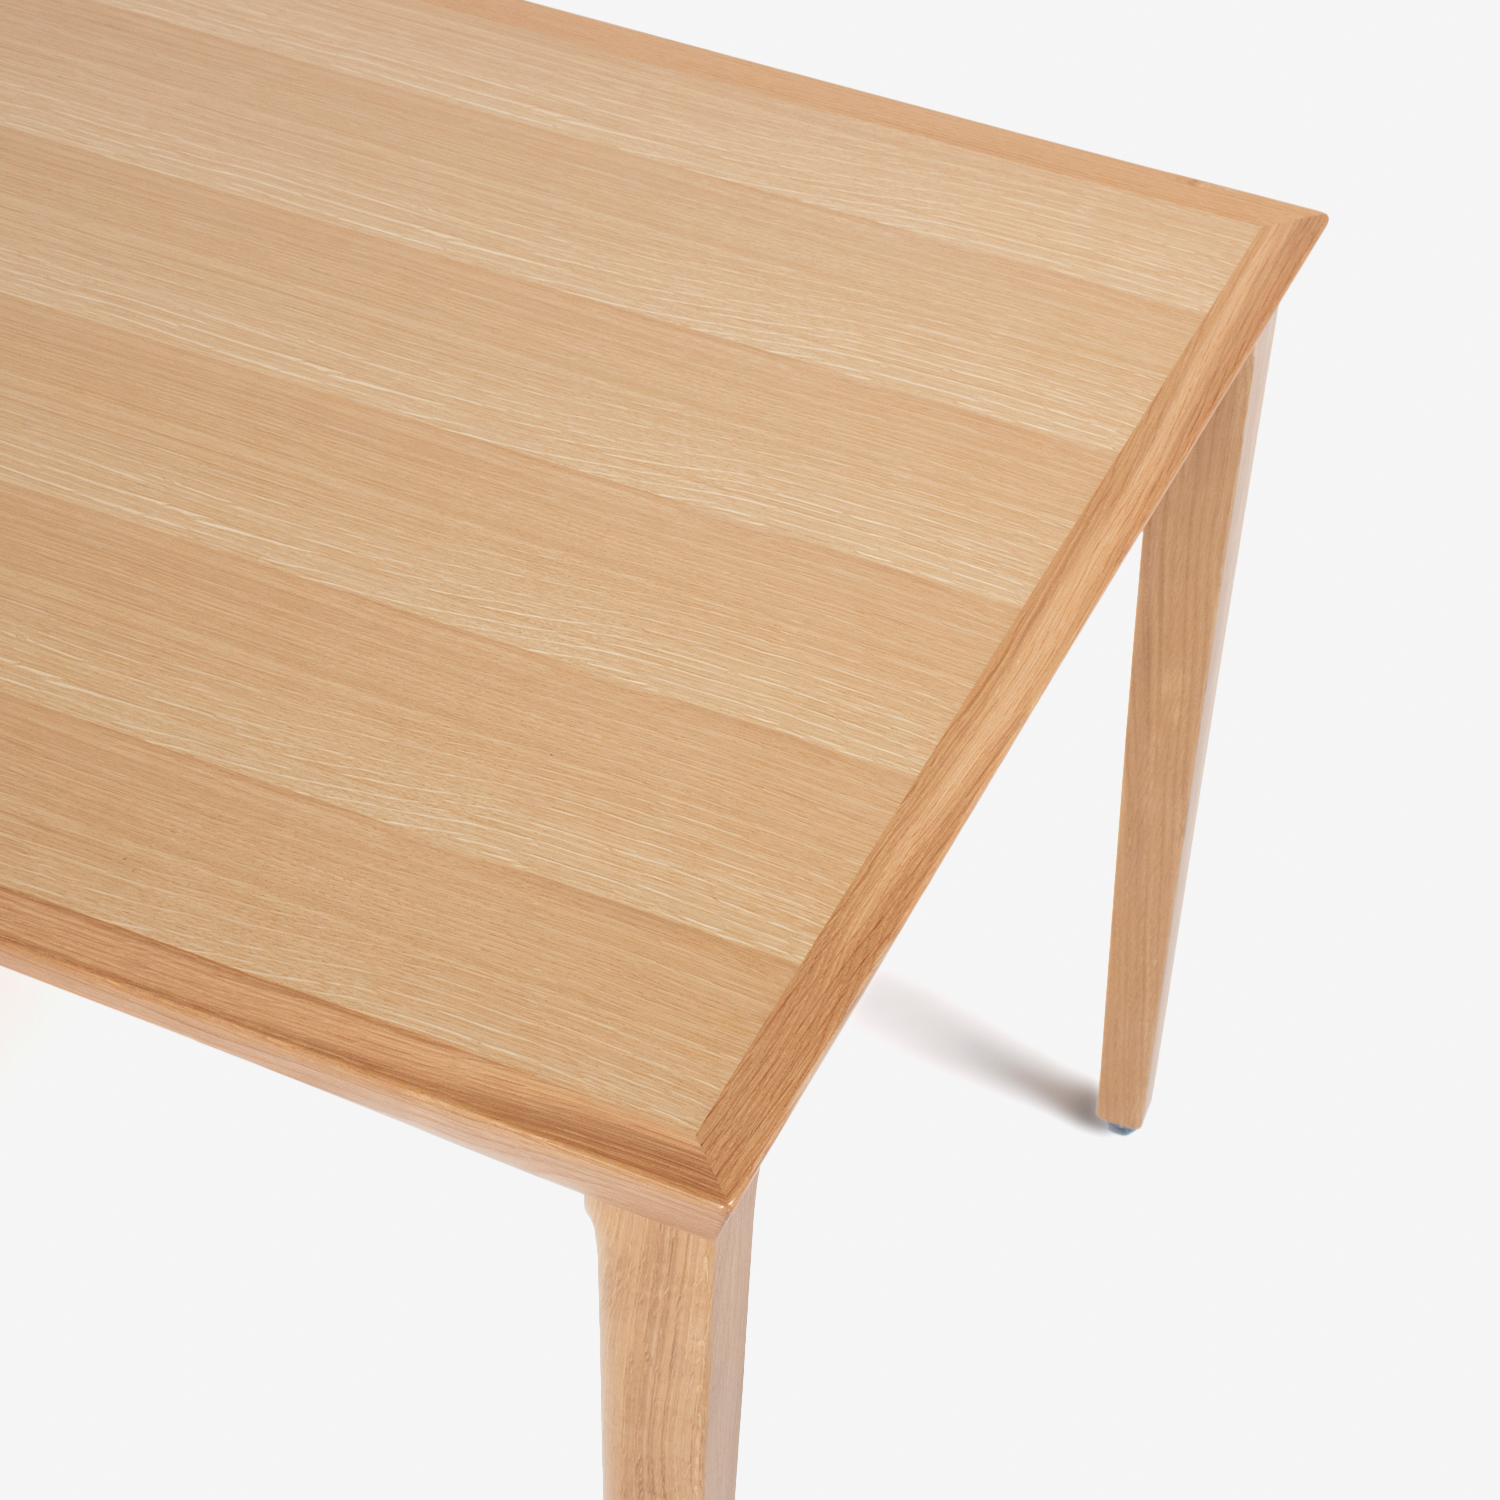 秋田木工 ダイニングテーブル「N-T005」ナラ材 ホワイトオーク色 全3サイズ【決算セールのため幅135cm・150cmタイプのみ20%オフ】